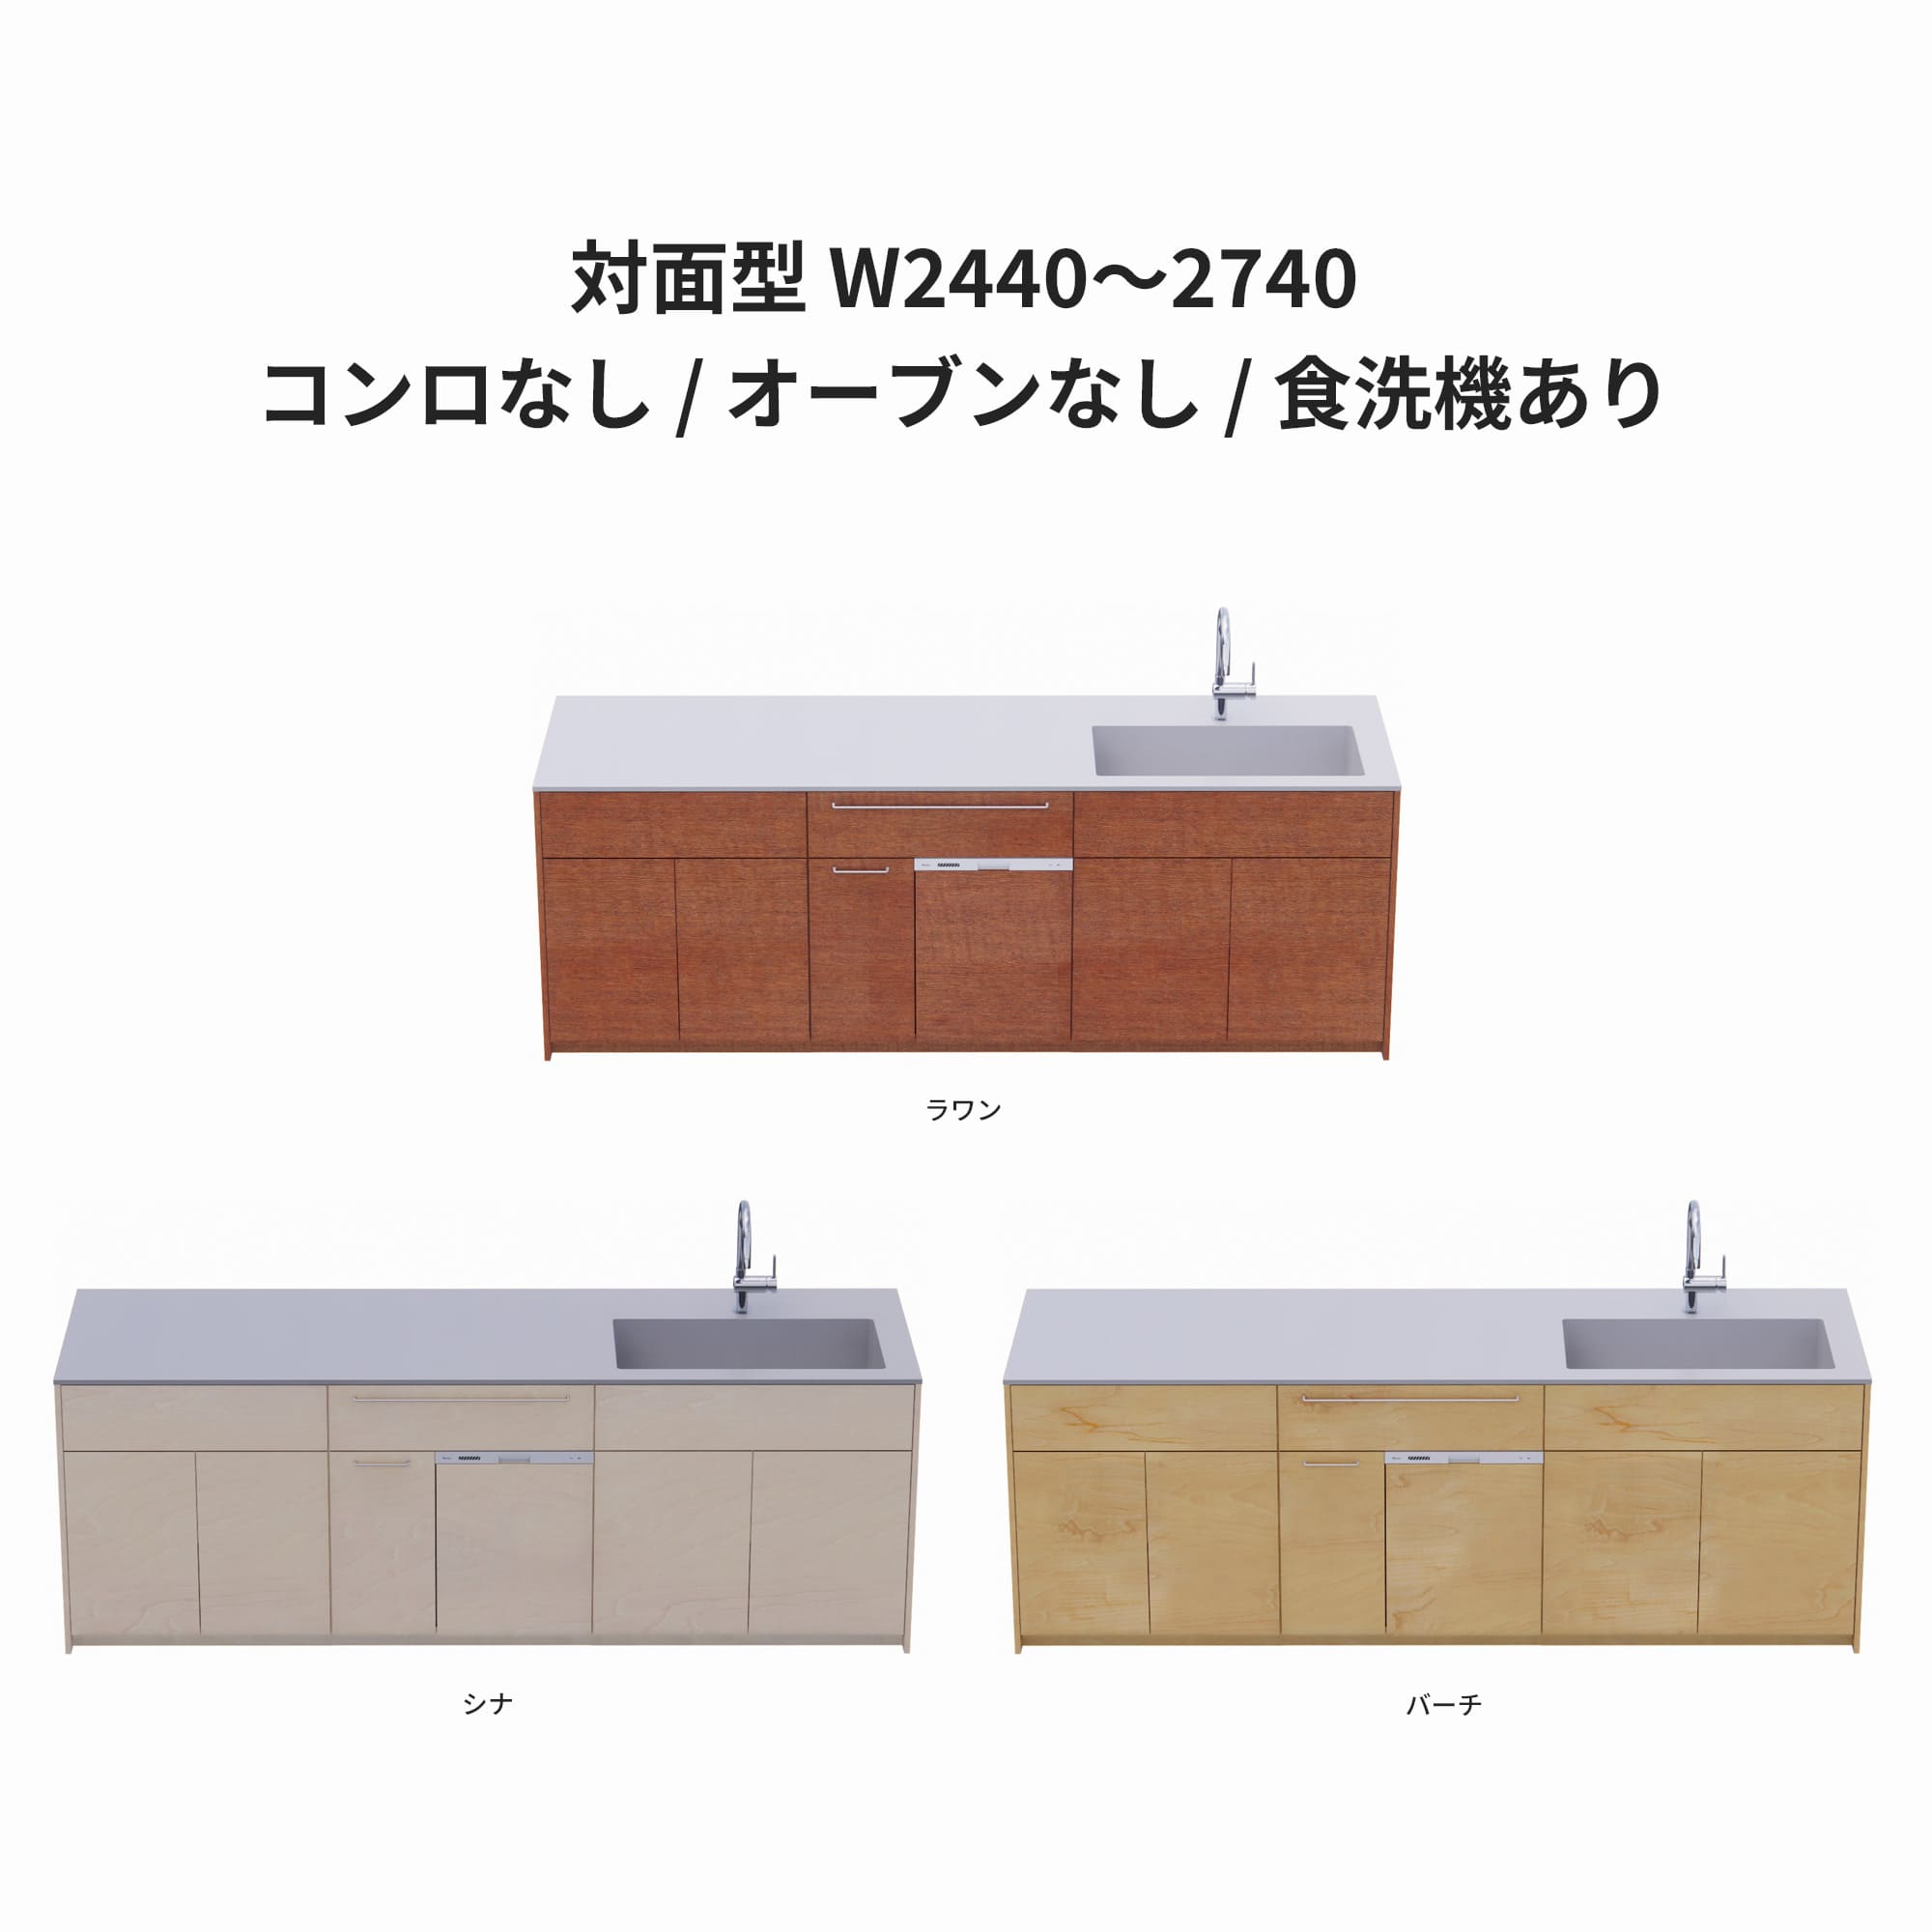 木製システムキッチン 対面型 W2440～2740・コンロなし / オーブンなし / 食洗機あり KB-KC022-45-G183 ラワン・シナ・バーチが選択できます